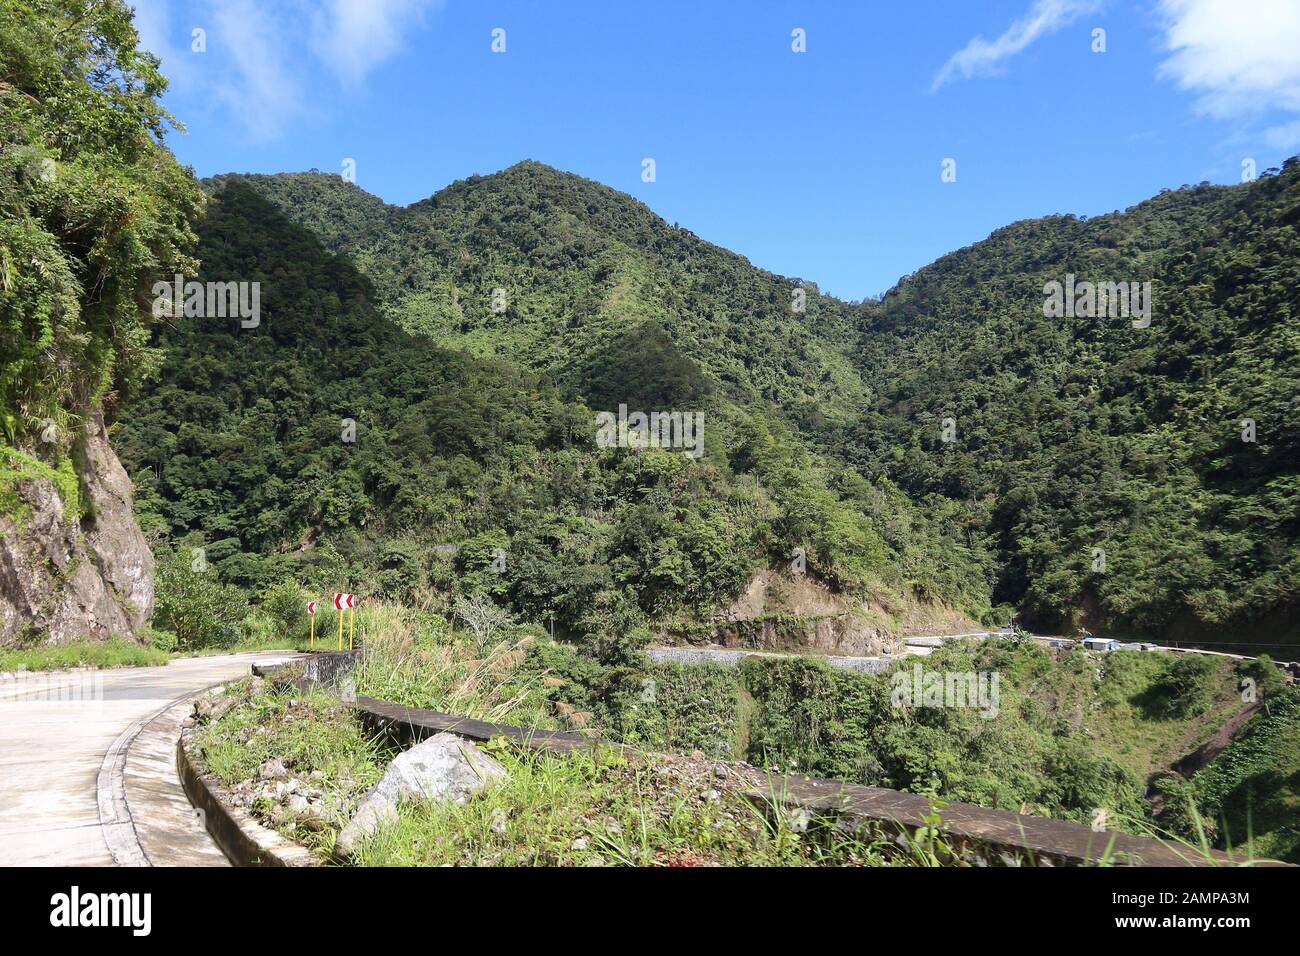 Philippines paysage de montagne. Route sinueuse de la forêt tropicale dans les montagnes de Cordillera près de Batad. Banque D'Images